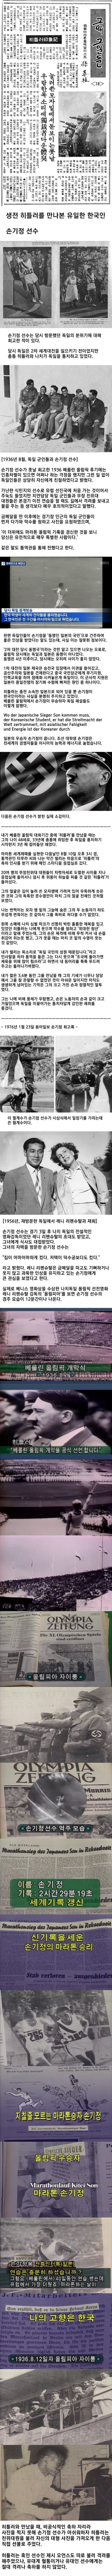 히틀러를 만나본 유일한 한국인의 소감